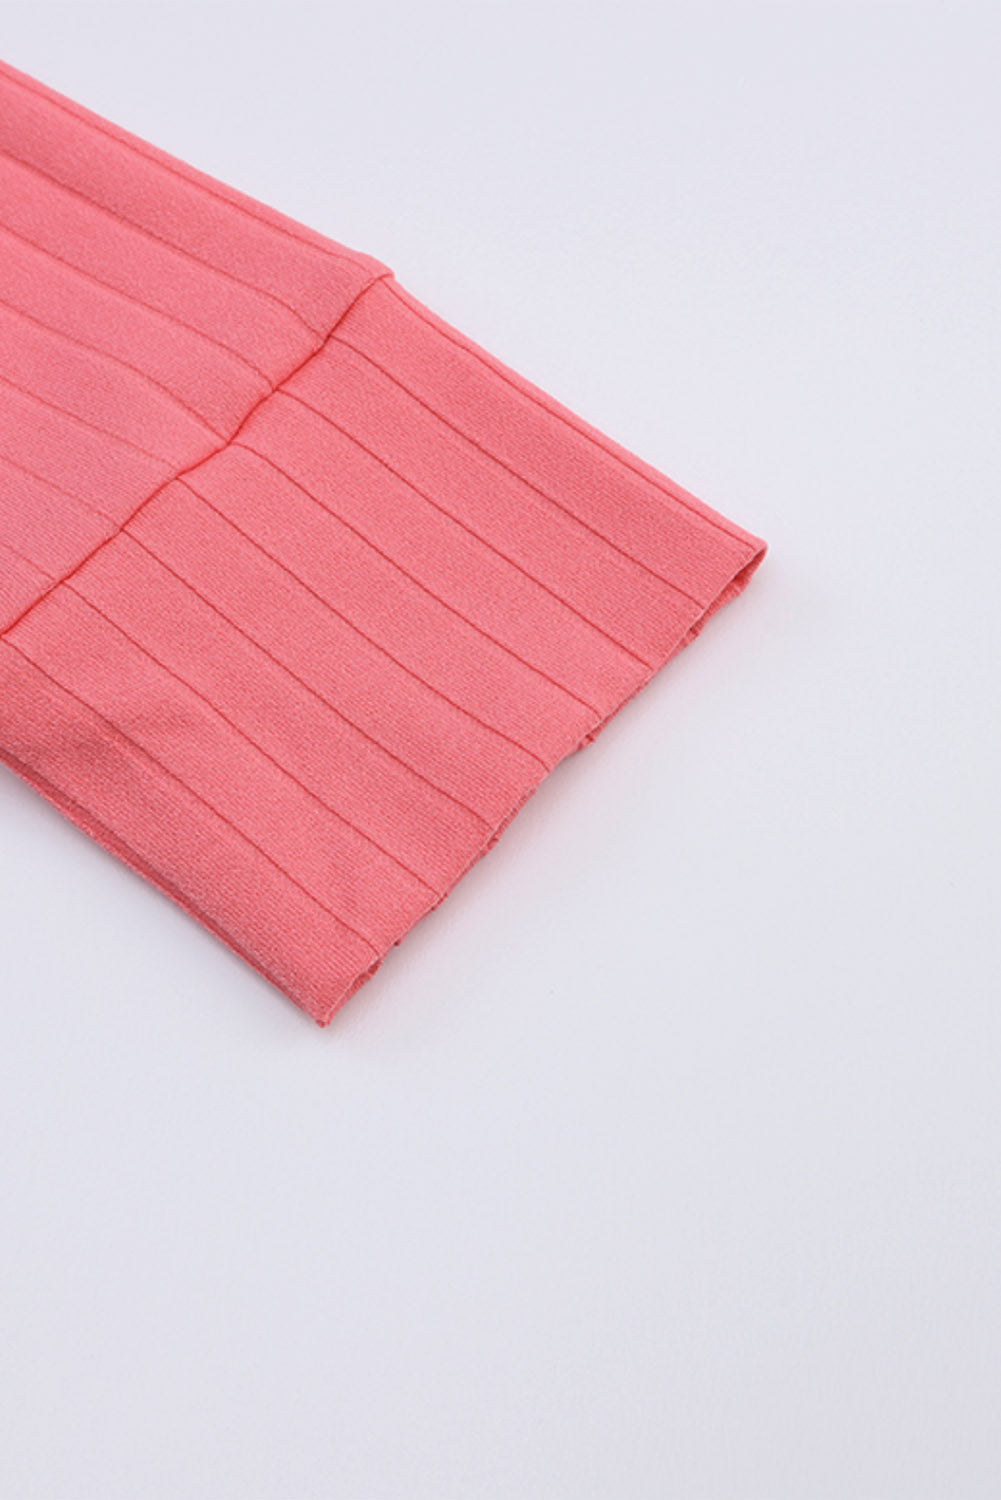 Rožnata odprta pletena jopica z žepi na sprednji strani